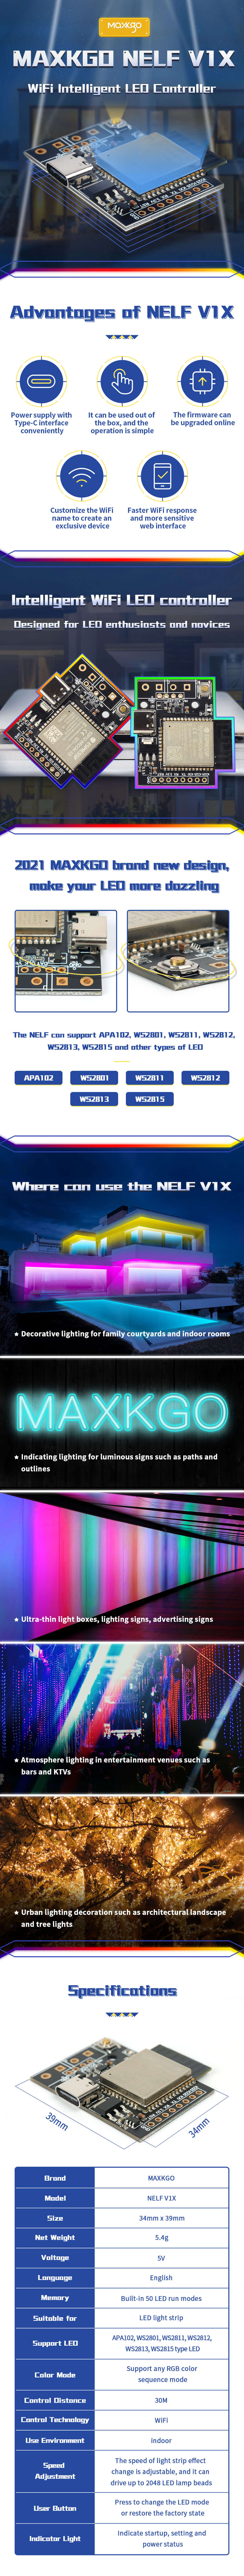 WiFi Christmas Light Controller 30M Remote Control | MAXKGO NELF VIX